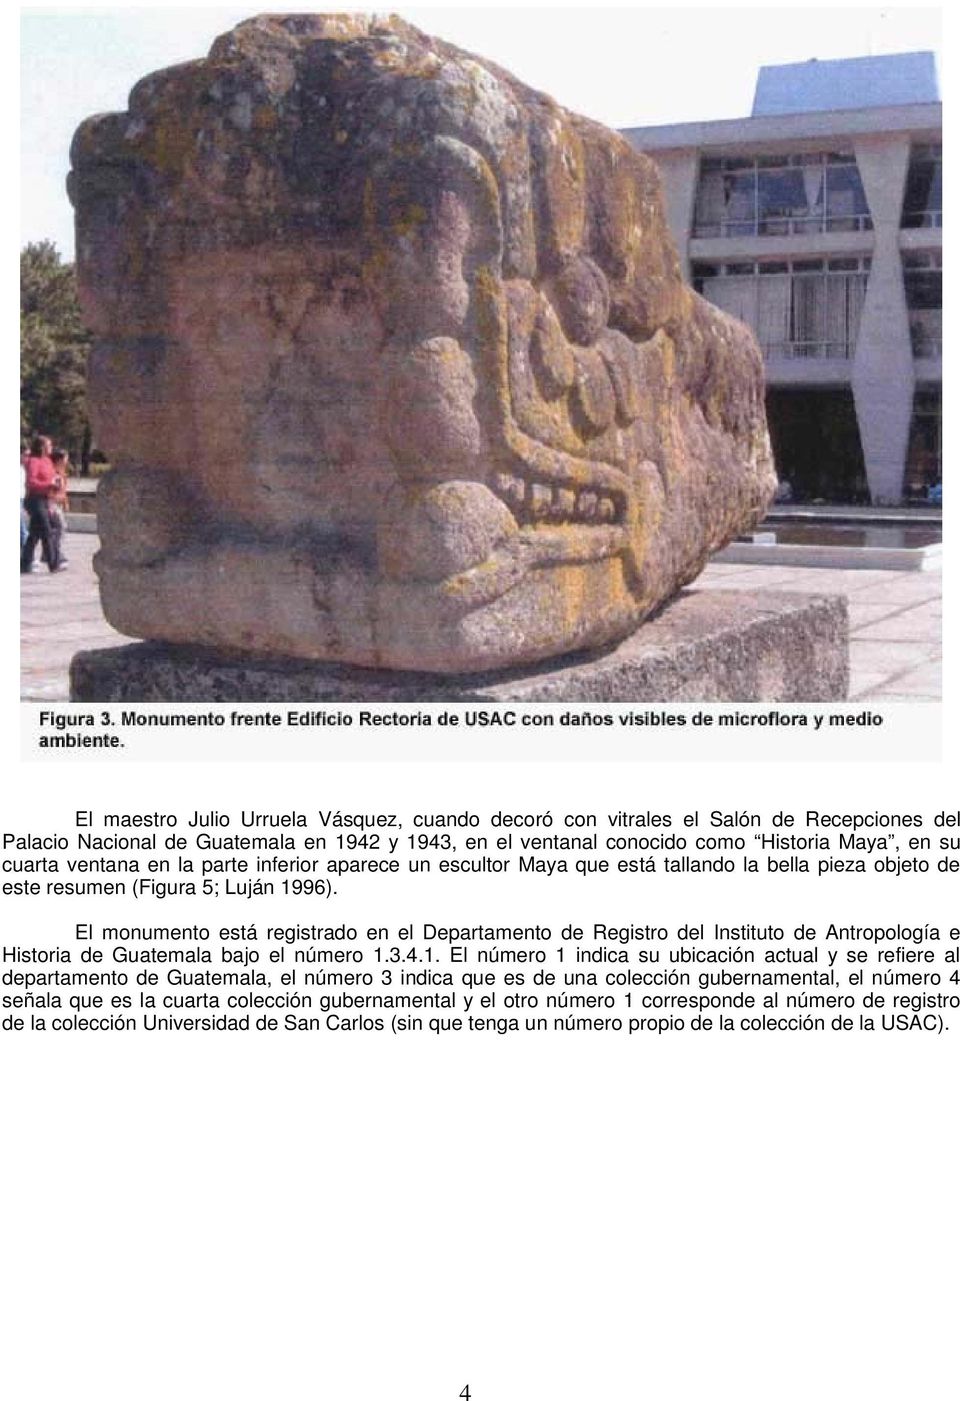 El monumento está registrado en el Departamento de Registro del Instituto de Antropología e Historia de Guatemala bajo el número 1.